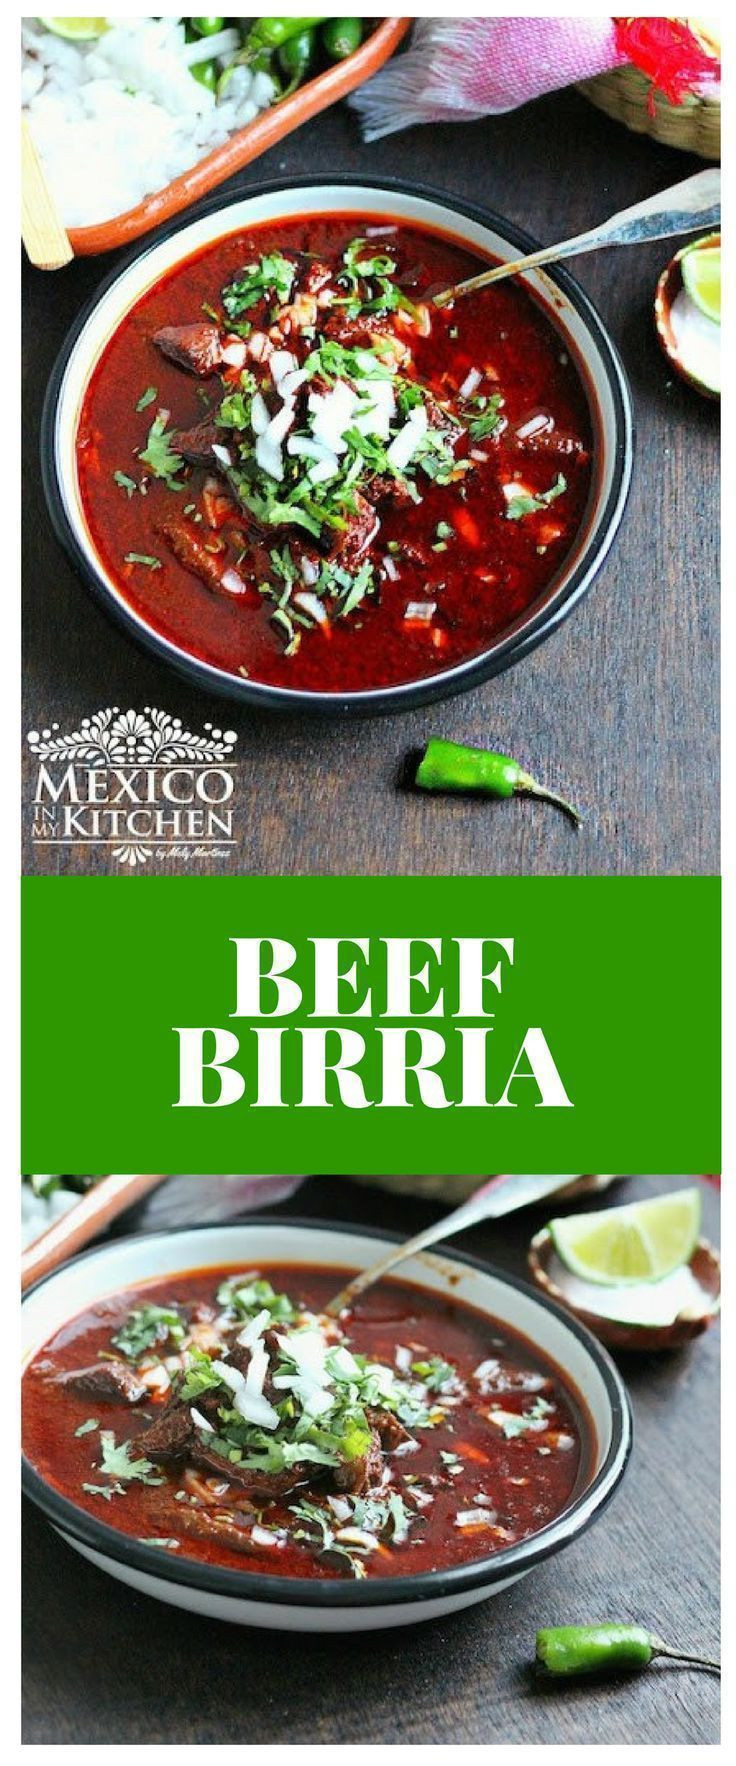 Mexican Birria Recipes
 Beef Birria Recipe Mexican Food